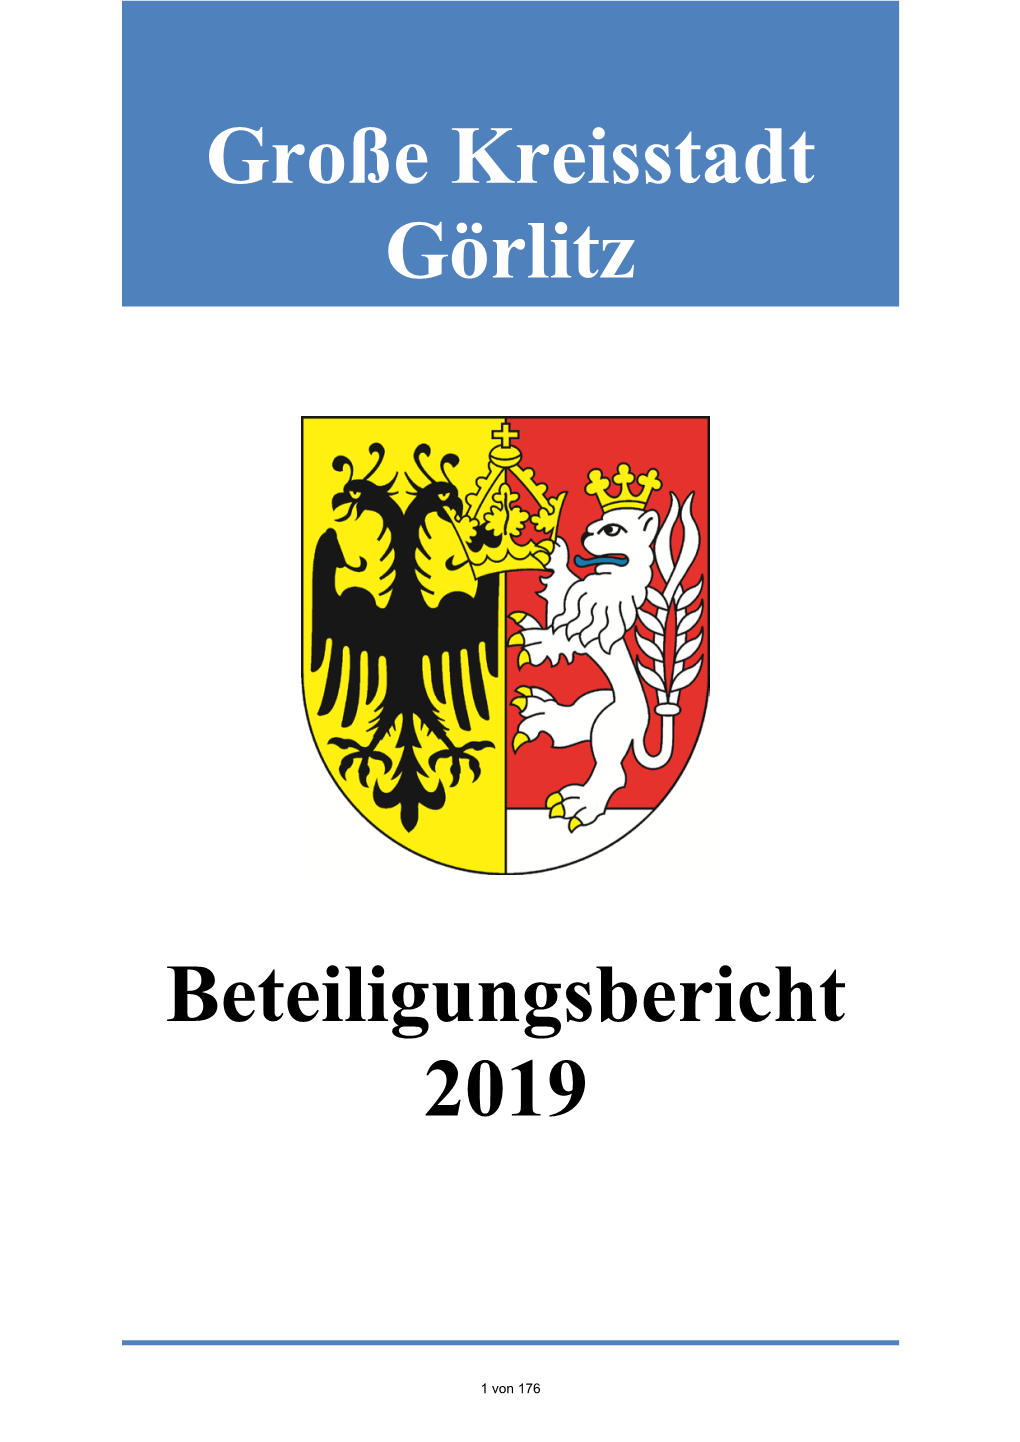 Beteiligungsbericht 2019 Große Kreisstadt Görlitz